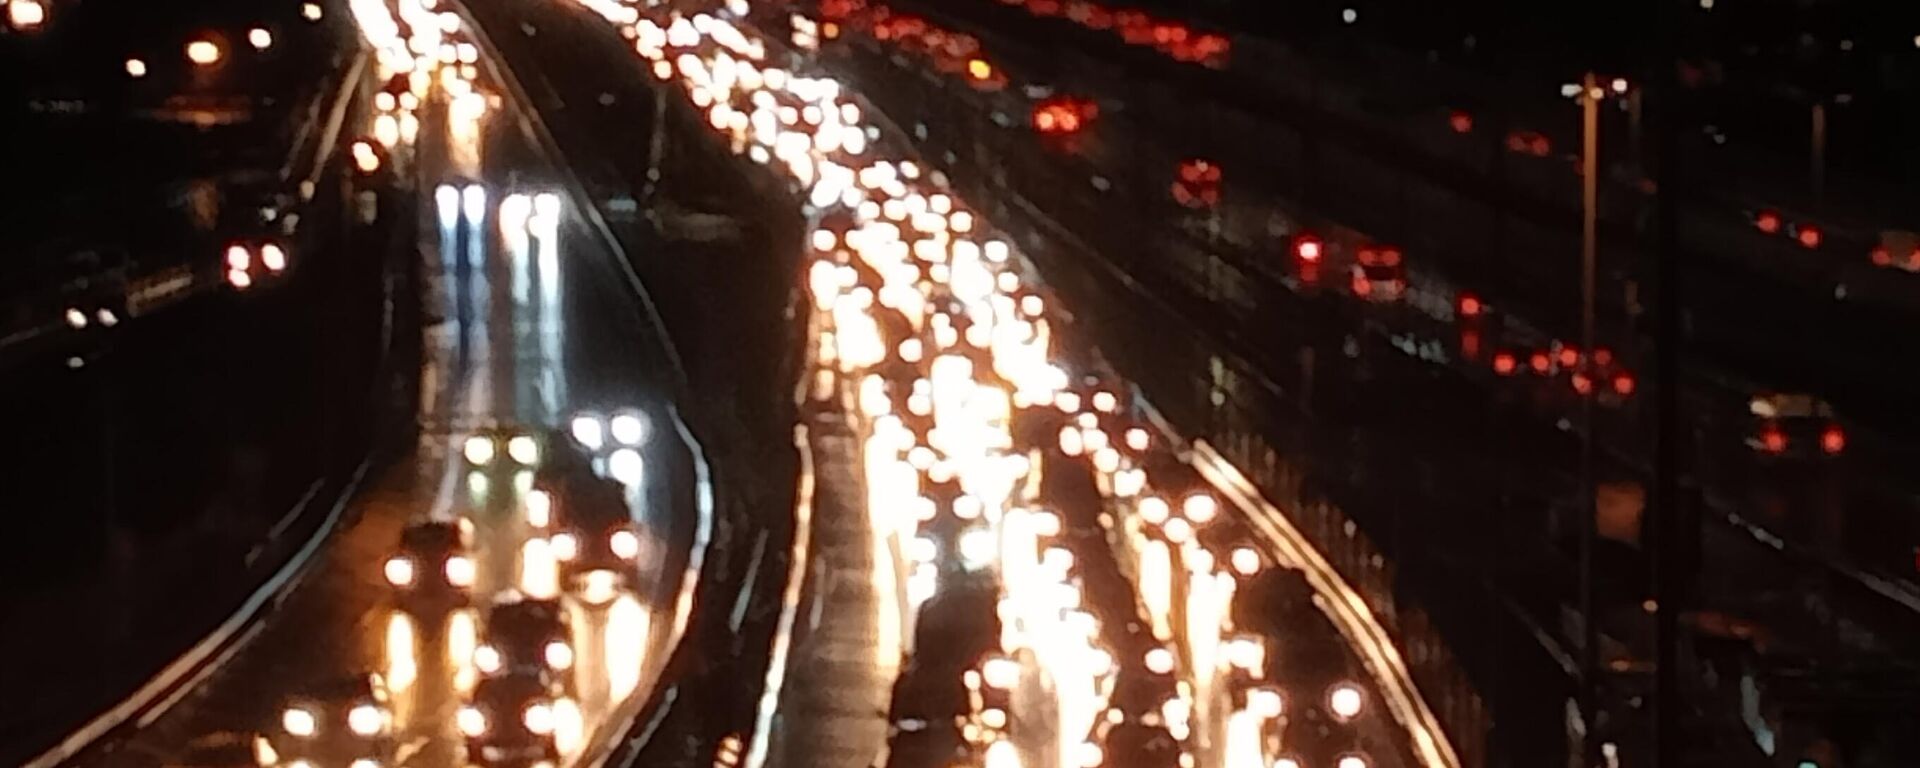 İstanbul'da gece saatlerinden itibaren başlayan yağış yer yer etkili olmaya devam ederken birçok noktada trafik yoğunluğu yaşanıyor. - Sputnik Türkiye, 1920, 20.01.2023